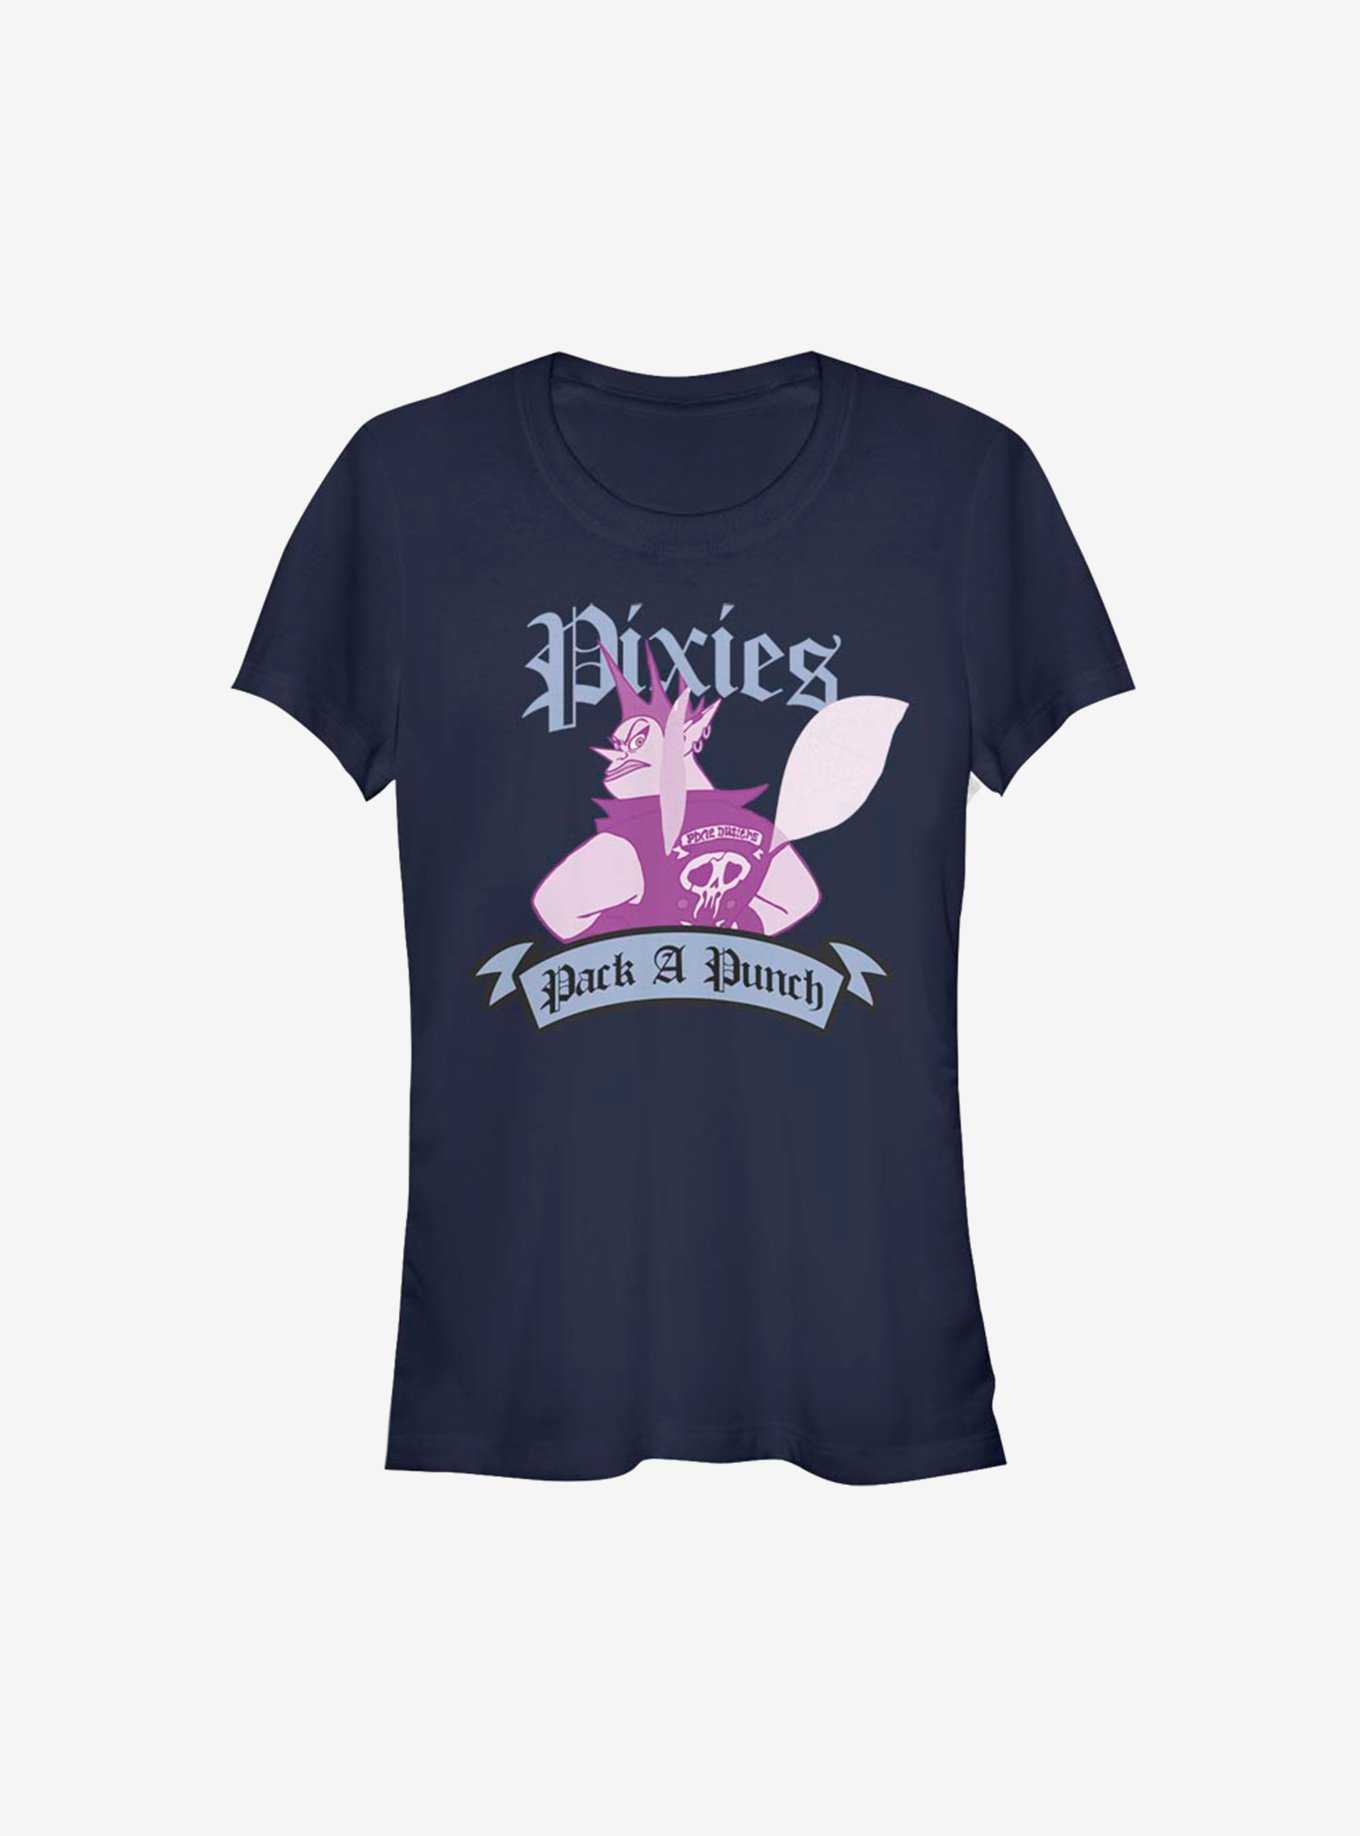 Disney Pixar Onward Pixie Punch Girls T-Shirt, , hi-res